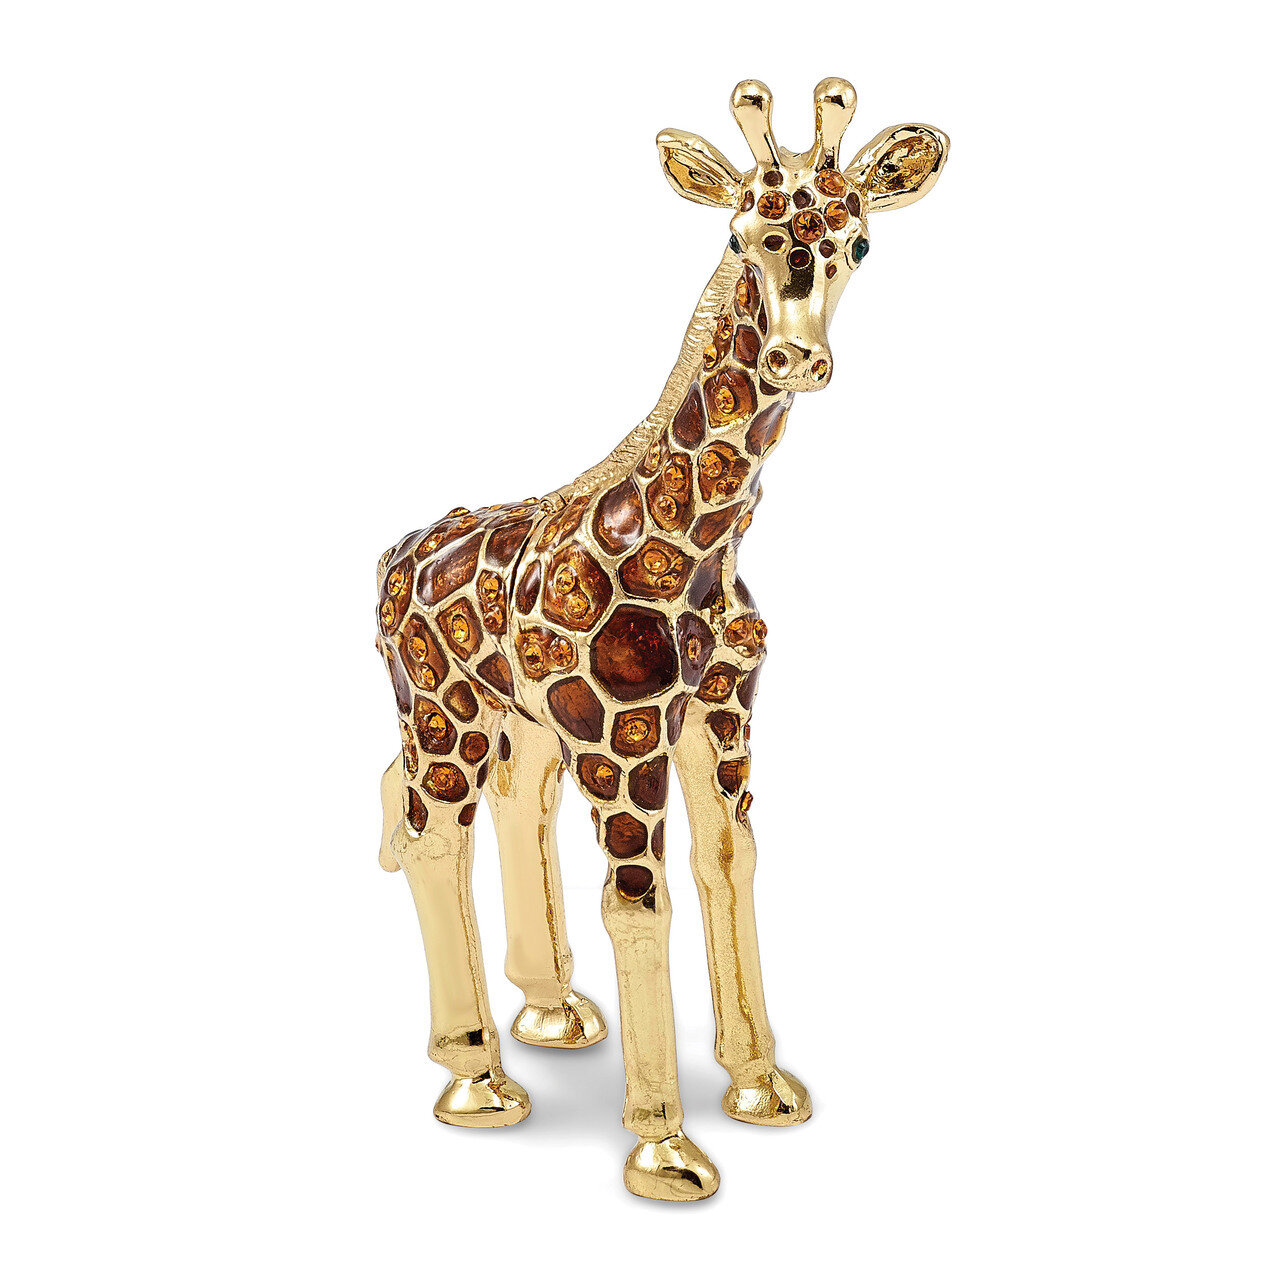 Standing Giraffe Trinket Box Enamel on Pewter by Jere